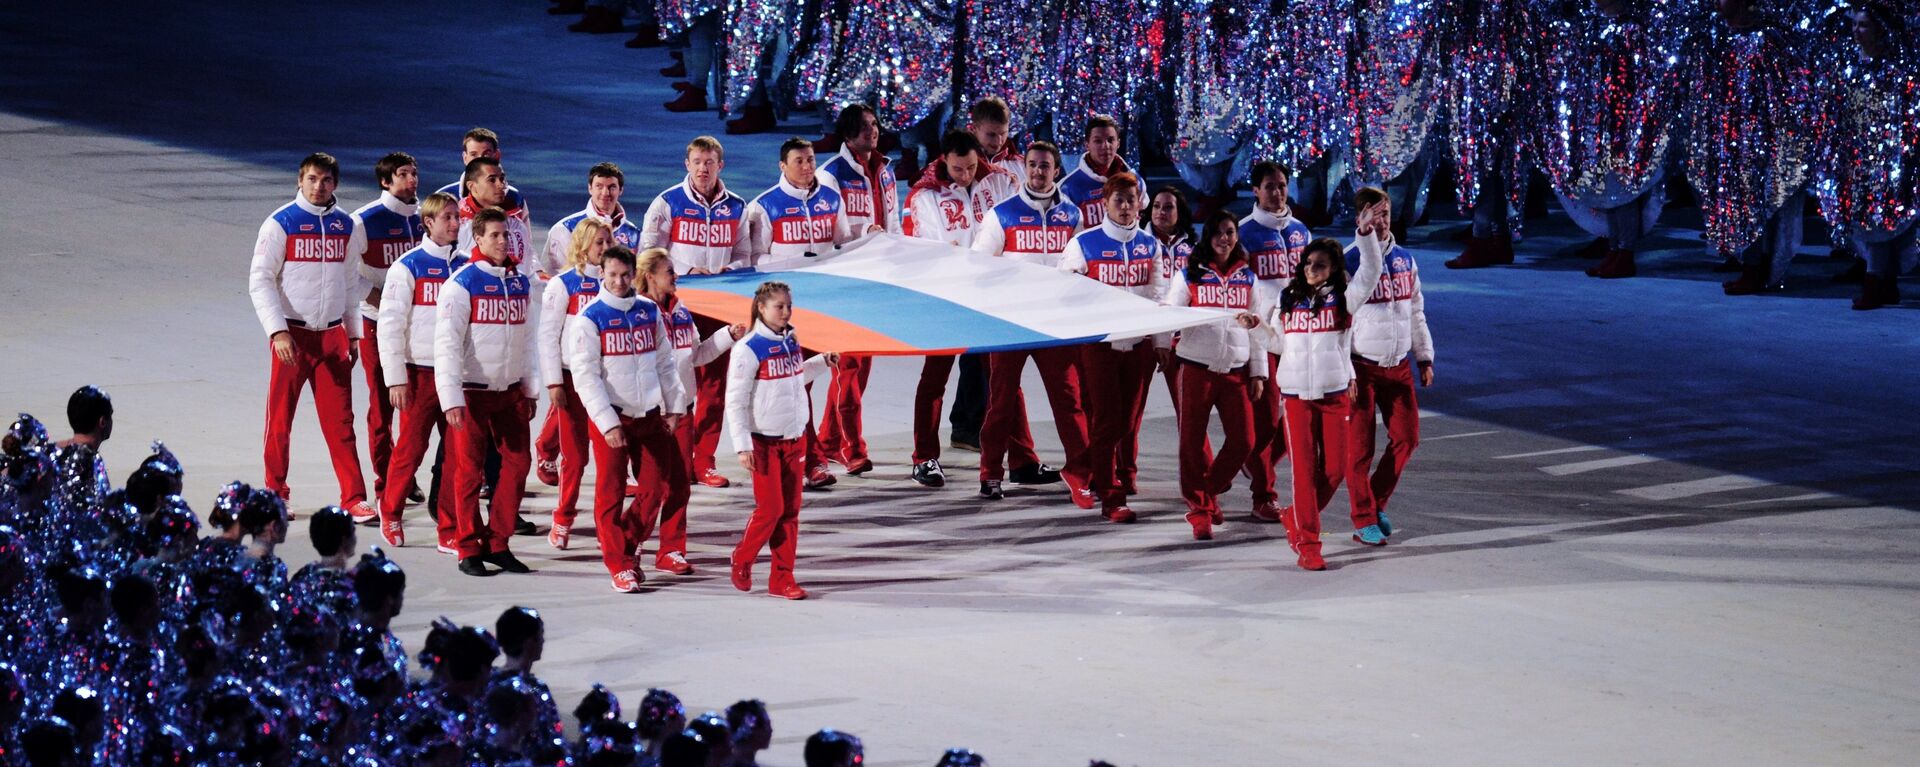 Руски спортисти носе националну заставу на церемонији затварања XXII Зимских олимпијских игара у Сочију - Sputnik Србија, 1920, 14.08.2022